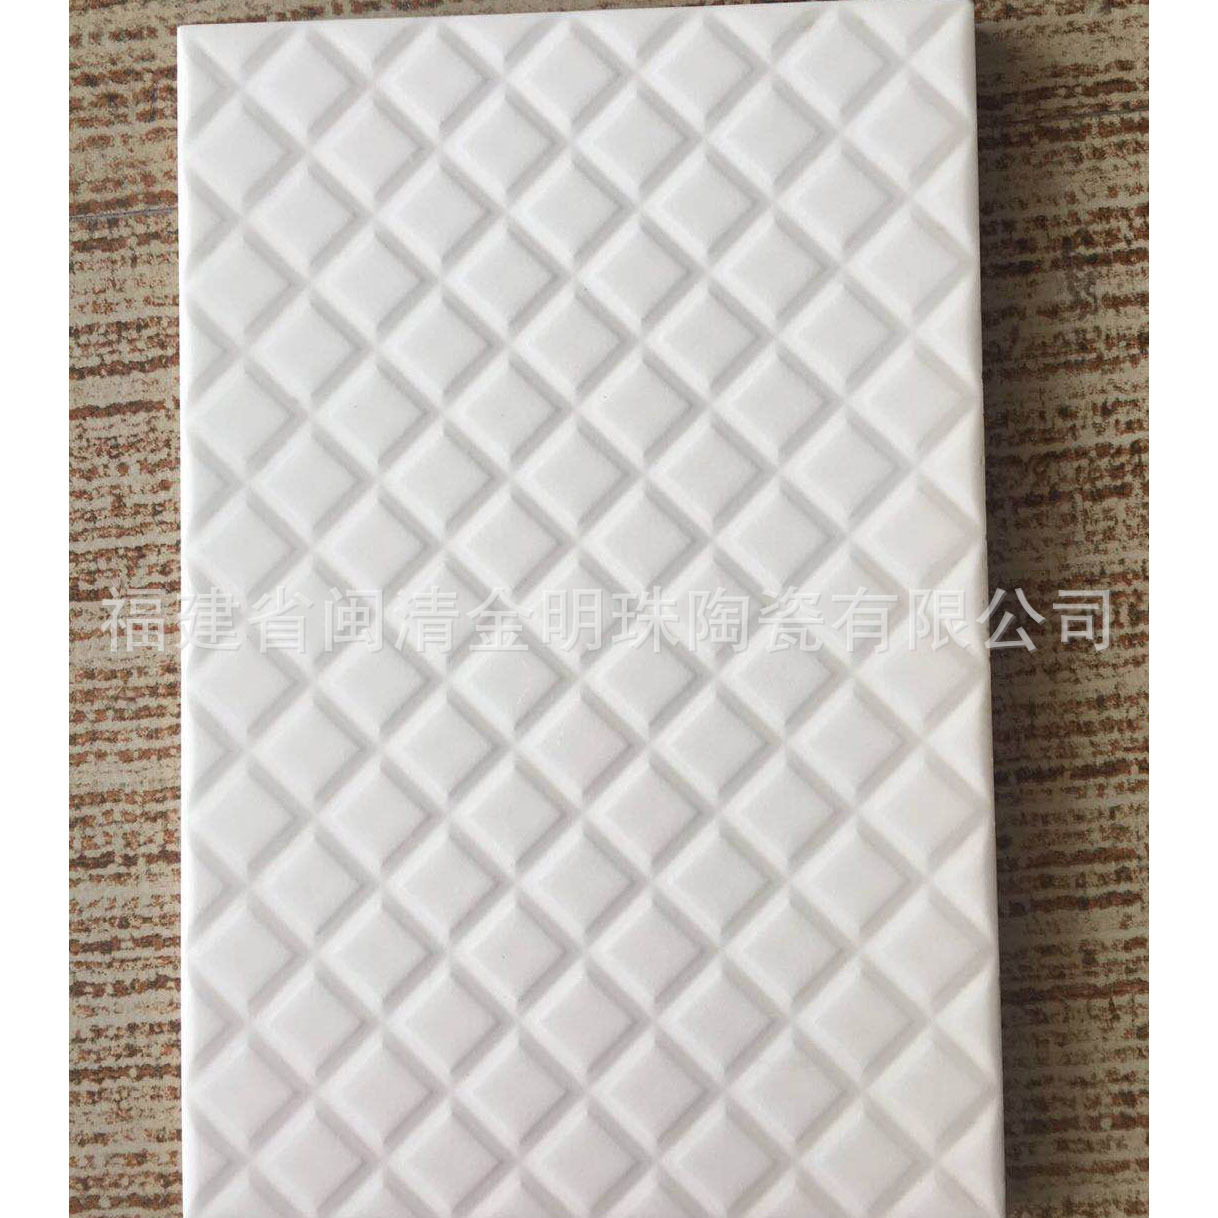 厂家供应国内外工程砖200X300纯白凹凸亮光不透水瓷片 廉租房瓷砖